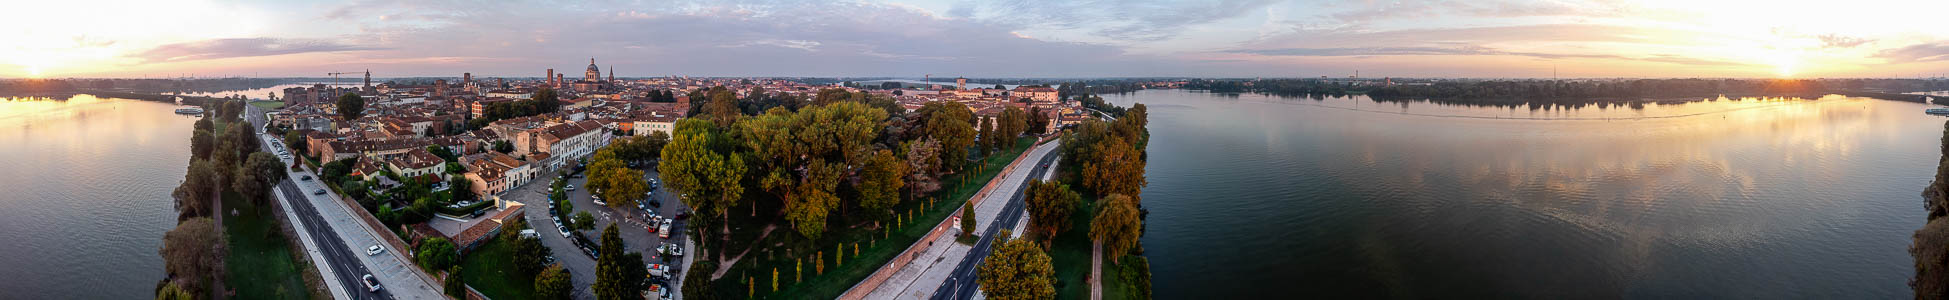 Mantua Centro storico, Lago di Mezzo (Mincio)